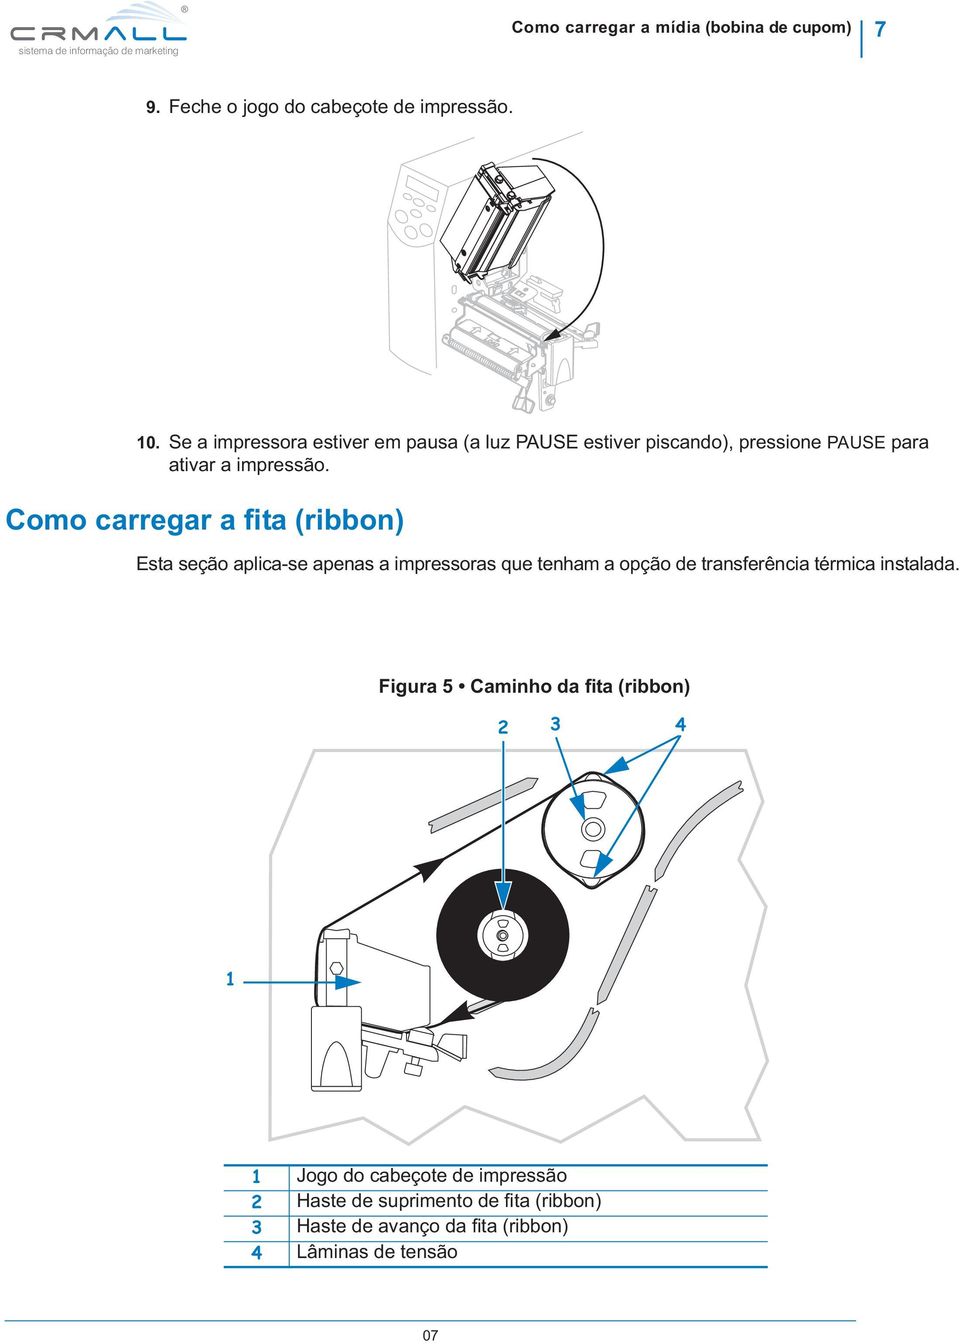 Como carregar a fita (ribbon) Esta seção aplica-se apenas a impressoras que tenham a opção de transferência térmica instalada.